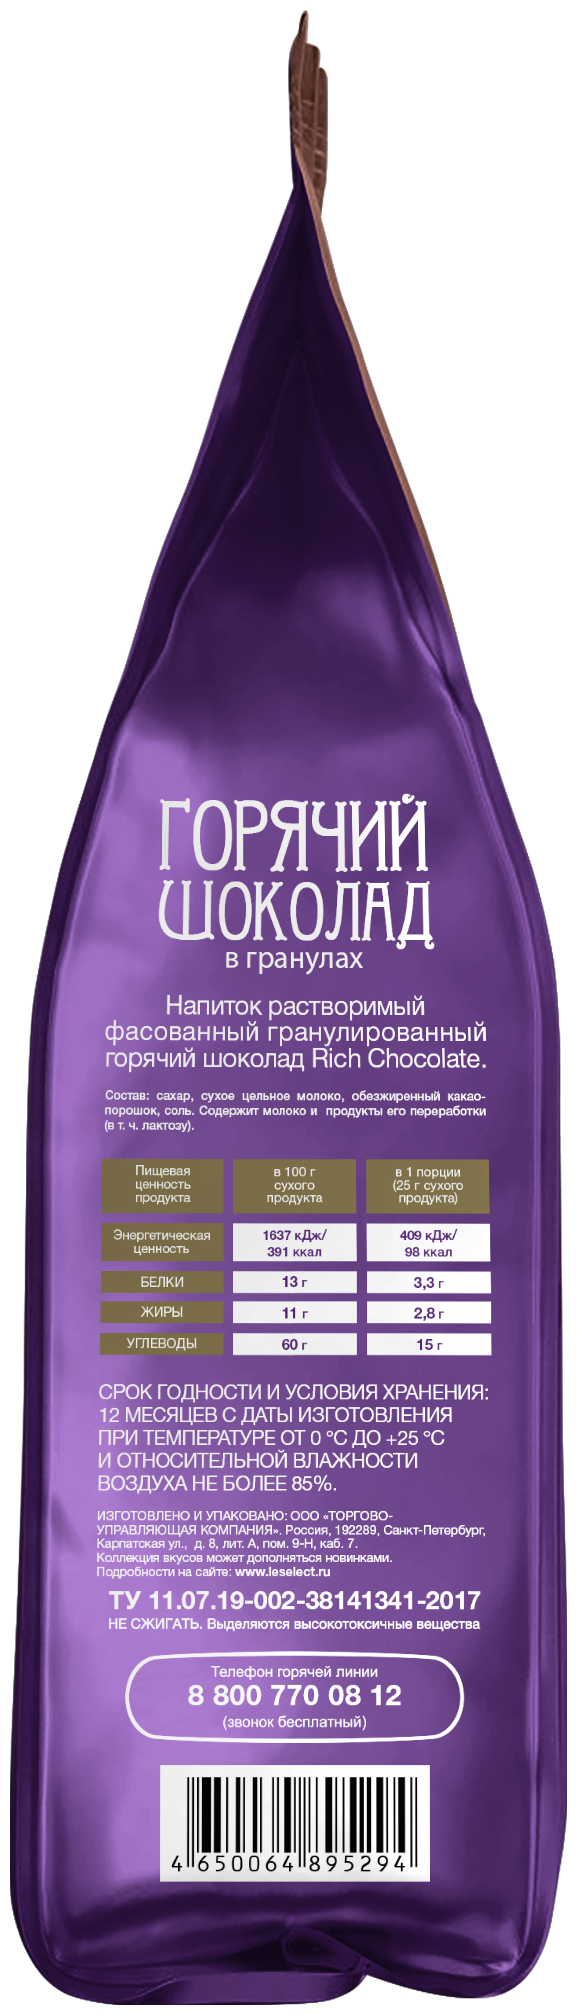 Горячий шоколад Rich Chocolate, Le Select, на натуральном молоке, гранулированный, 200 г. - фотография № 9